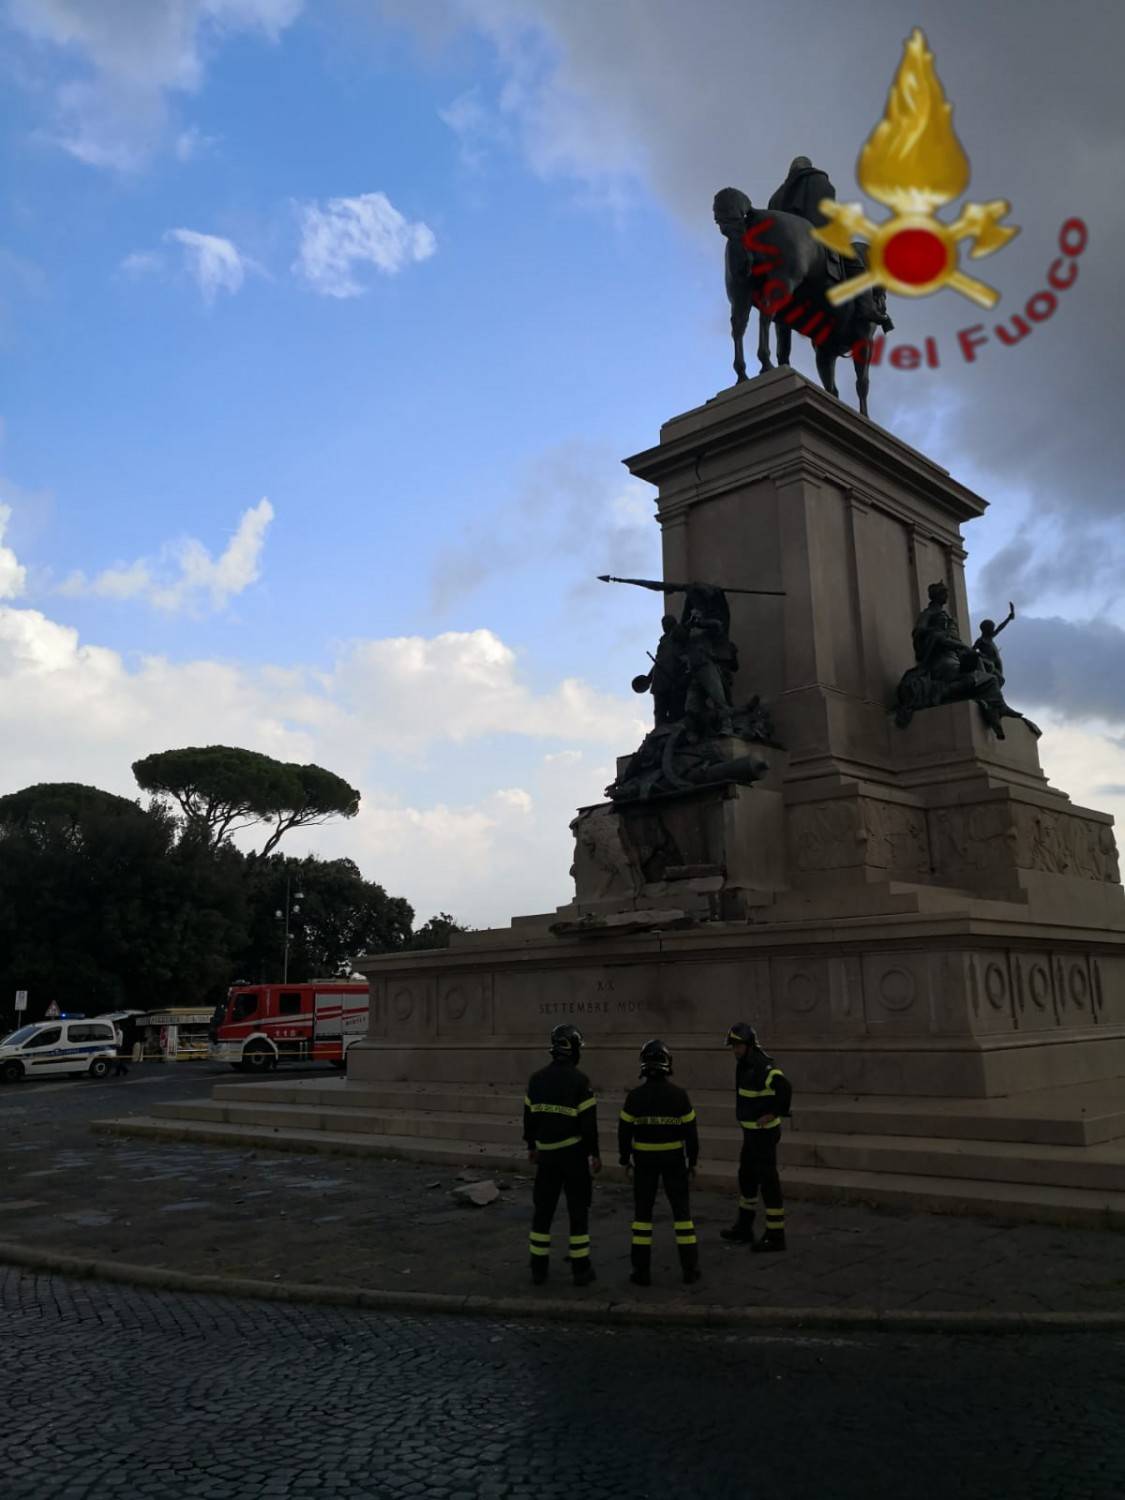 Roma, un fulmine fa crollare parte della statua di Garibaldi